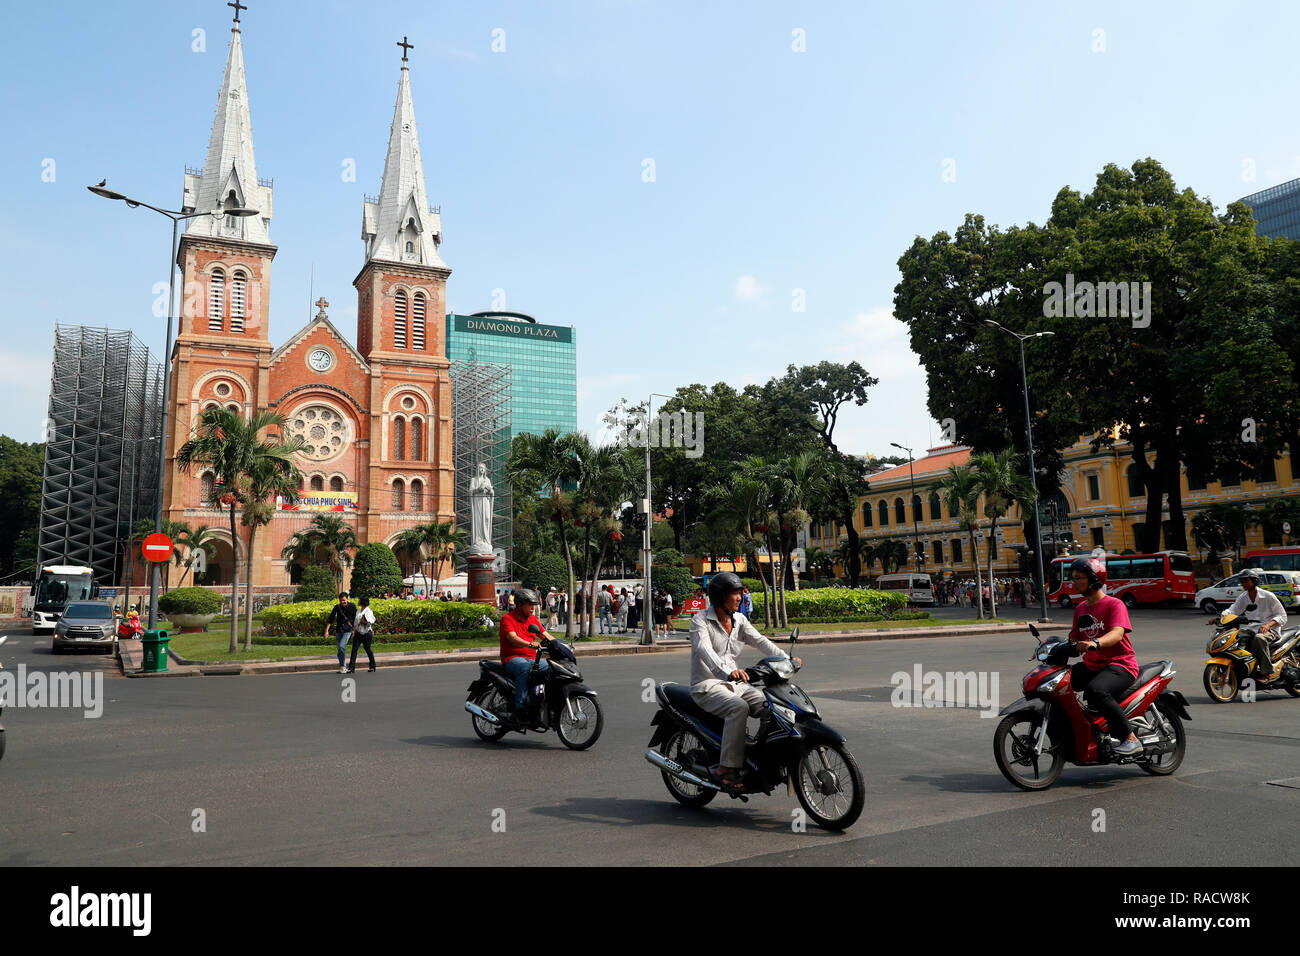 La cattedrale di Notre Dame e la Vergine Maria statua, District 1, Città di Ho Chi Minh (Saigon), Vietnam, Indocina, Asia sud-orientale, Asia Foto Stock